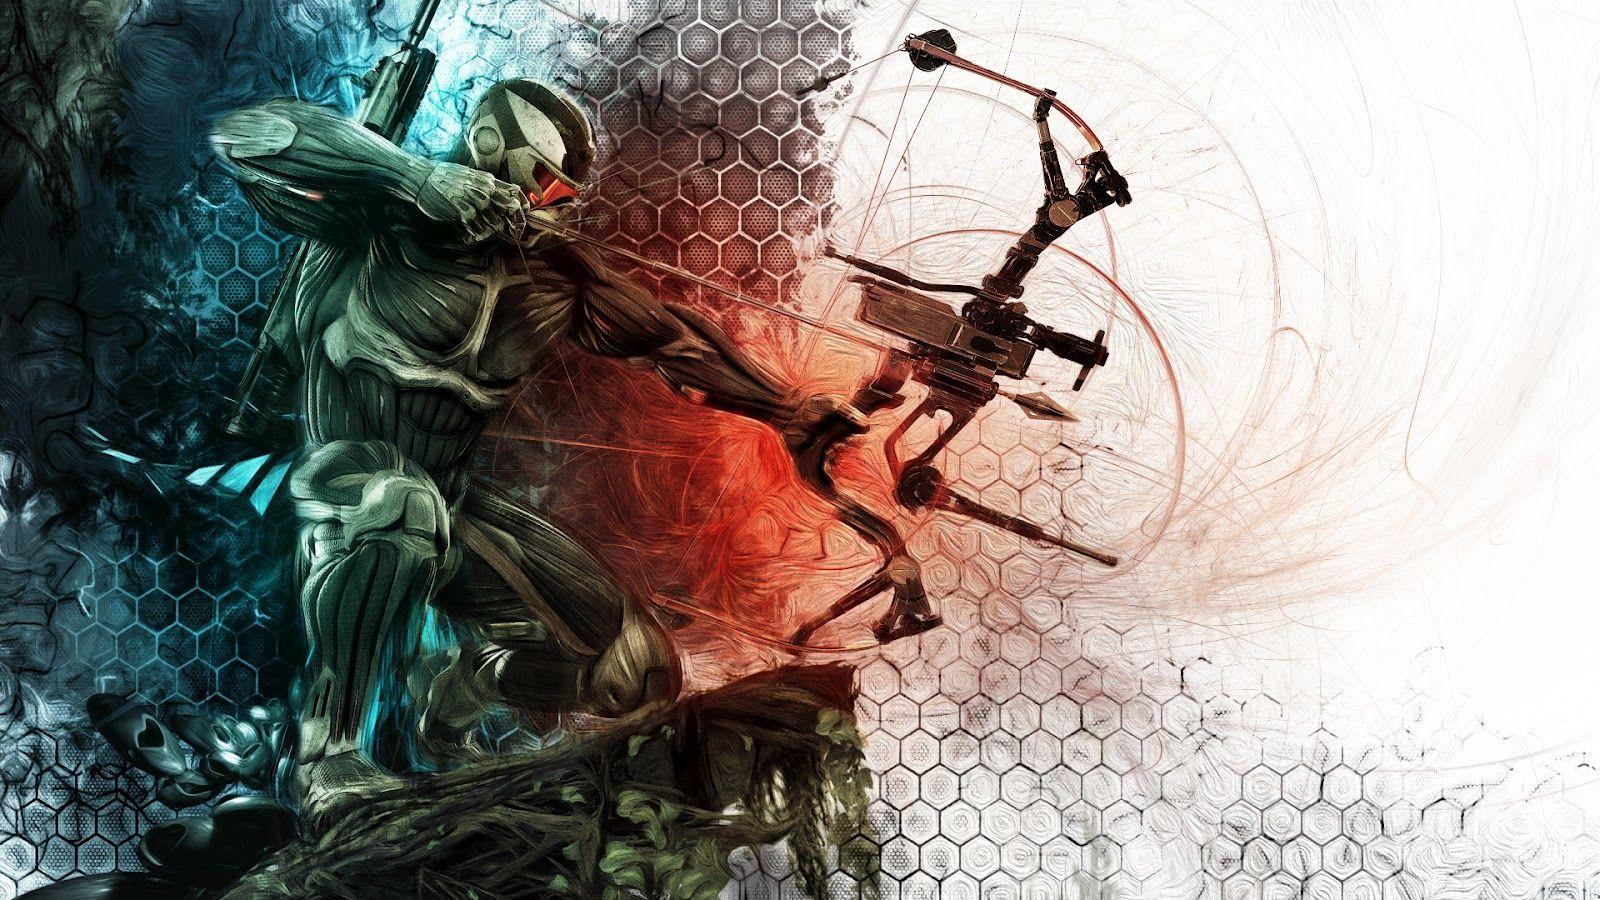 Crysis 3 [Imagenes wallpaper full HD + trailer]!